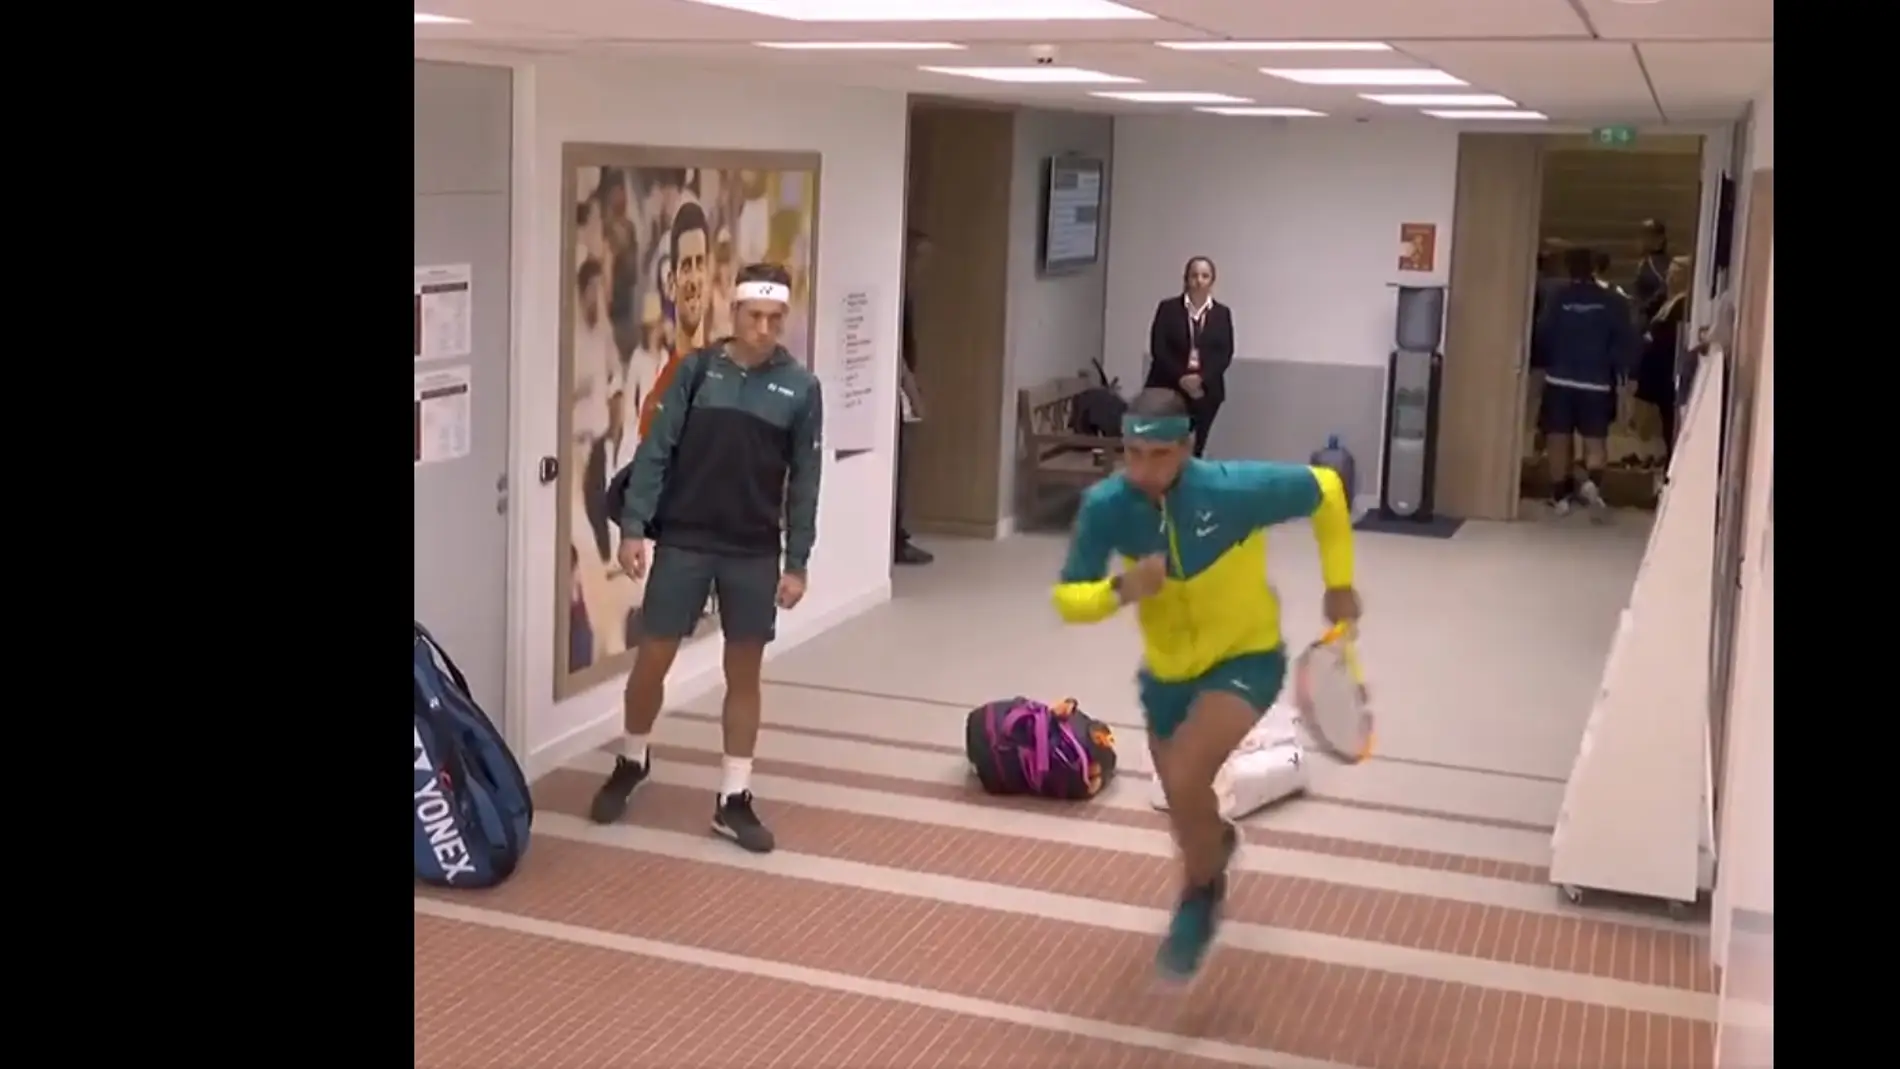 El vídeo viral de Nadal y su precalentamiento antes de saltar a pista para la final de Roland Garros: "Gana antes de salir"